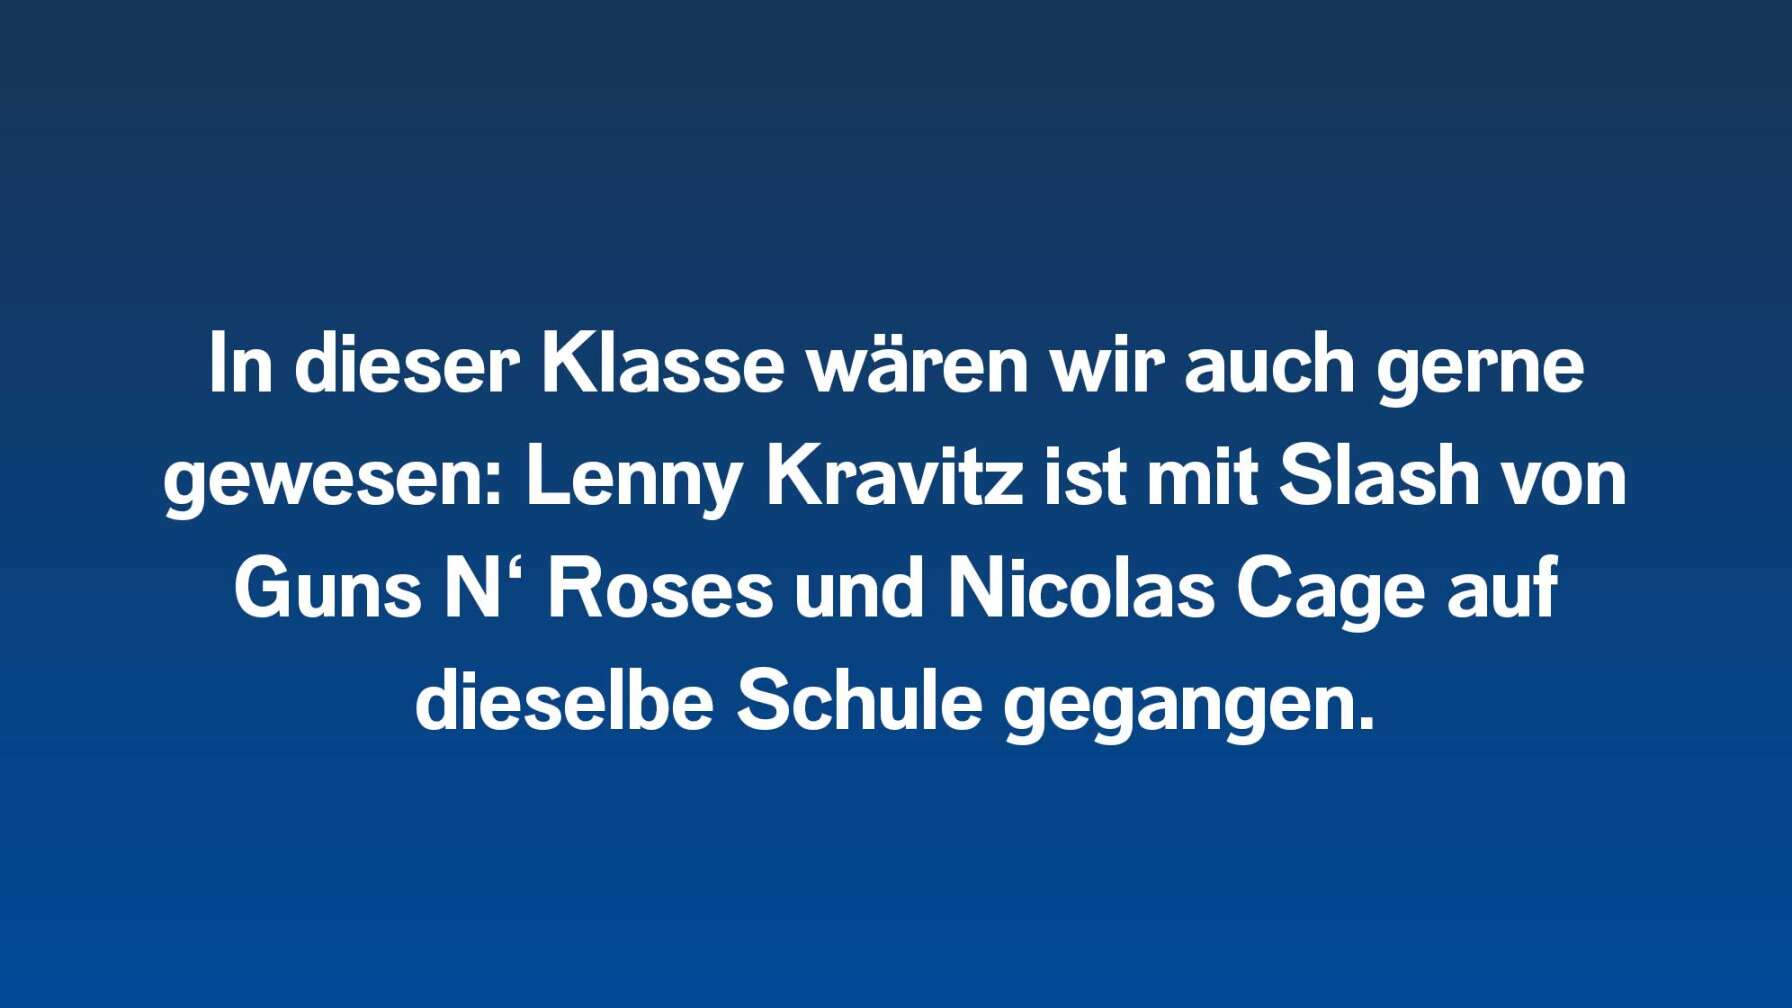 In dieser Klasse wären wir auch gerne gewesen: Lenny Kravitz ist mit Slash von Guns N‘ Roses und Nicolas Cage auf dieselbe Schule gegangen.